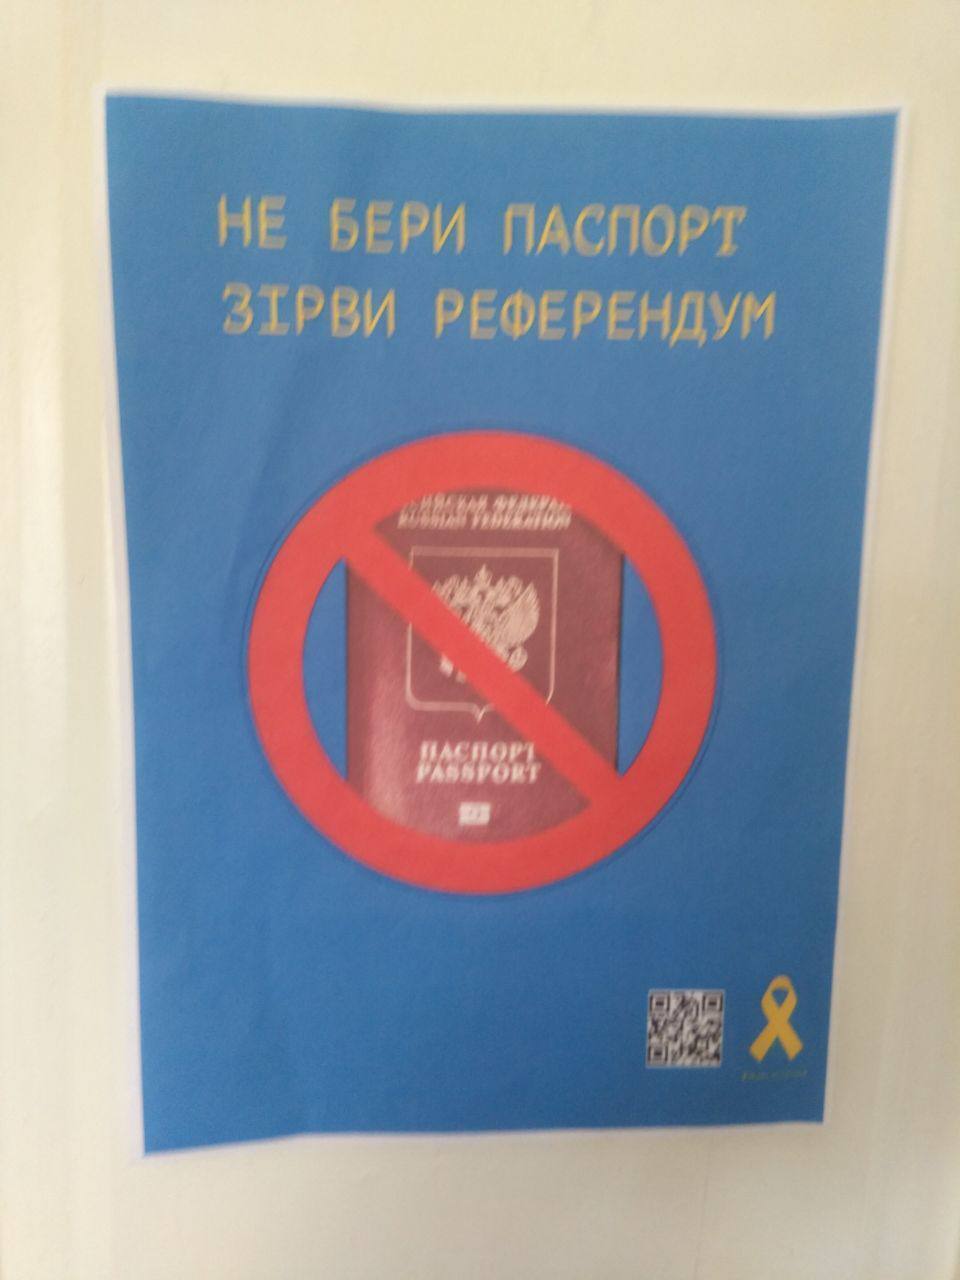 Луганськ прокидається! У місті влаштували сміливу акцію проти паспортів і "референдуму" РФ. Фото